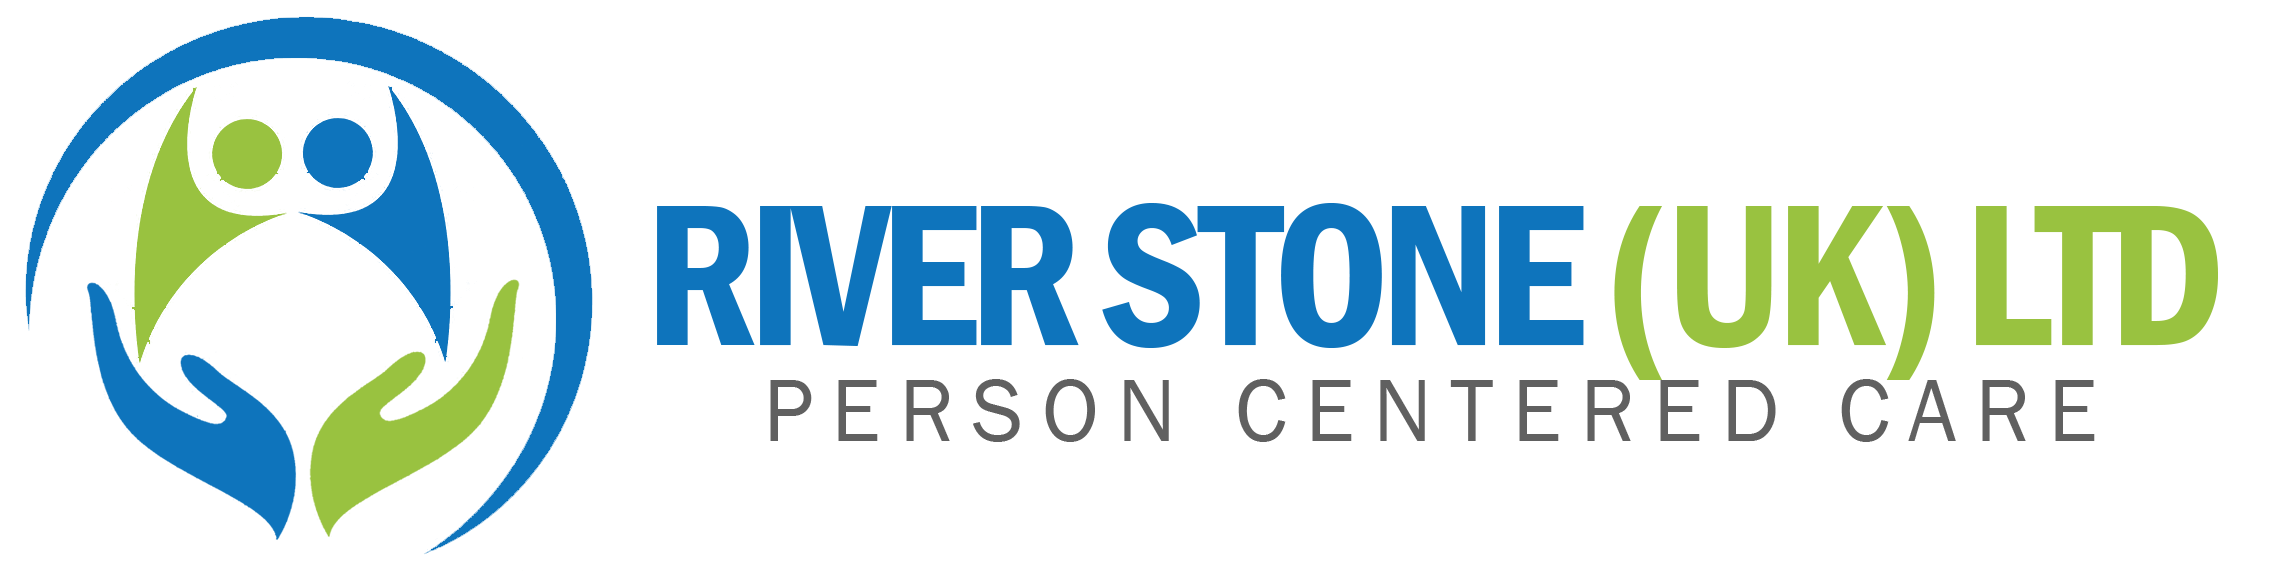 River Stone Care Services